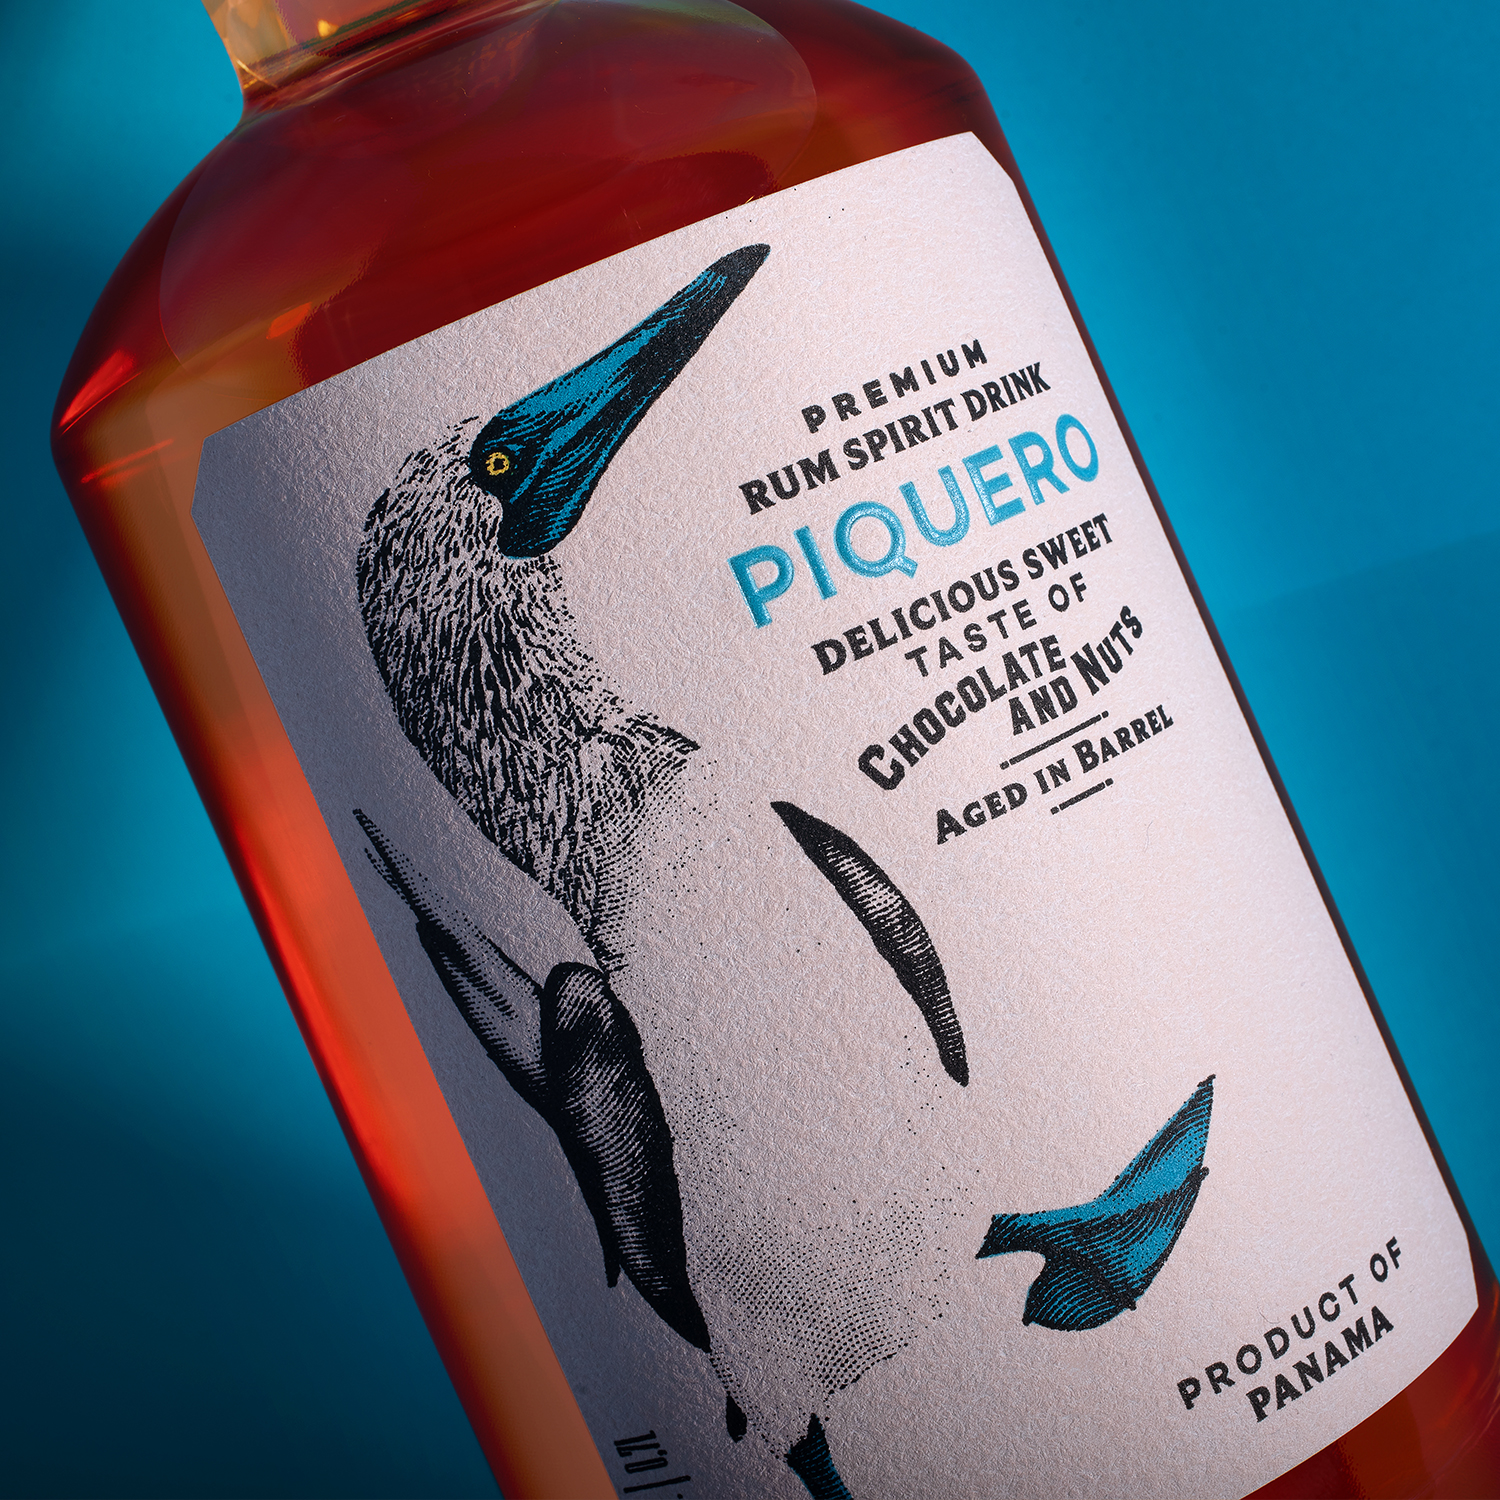 Piquero premium rum spirit drink